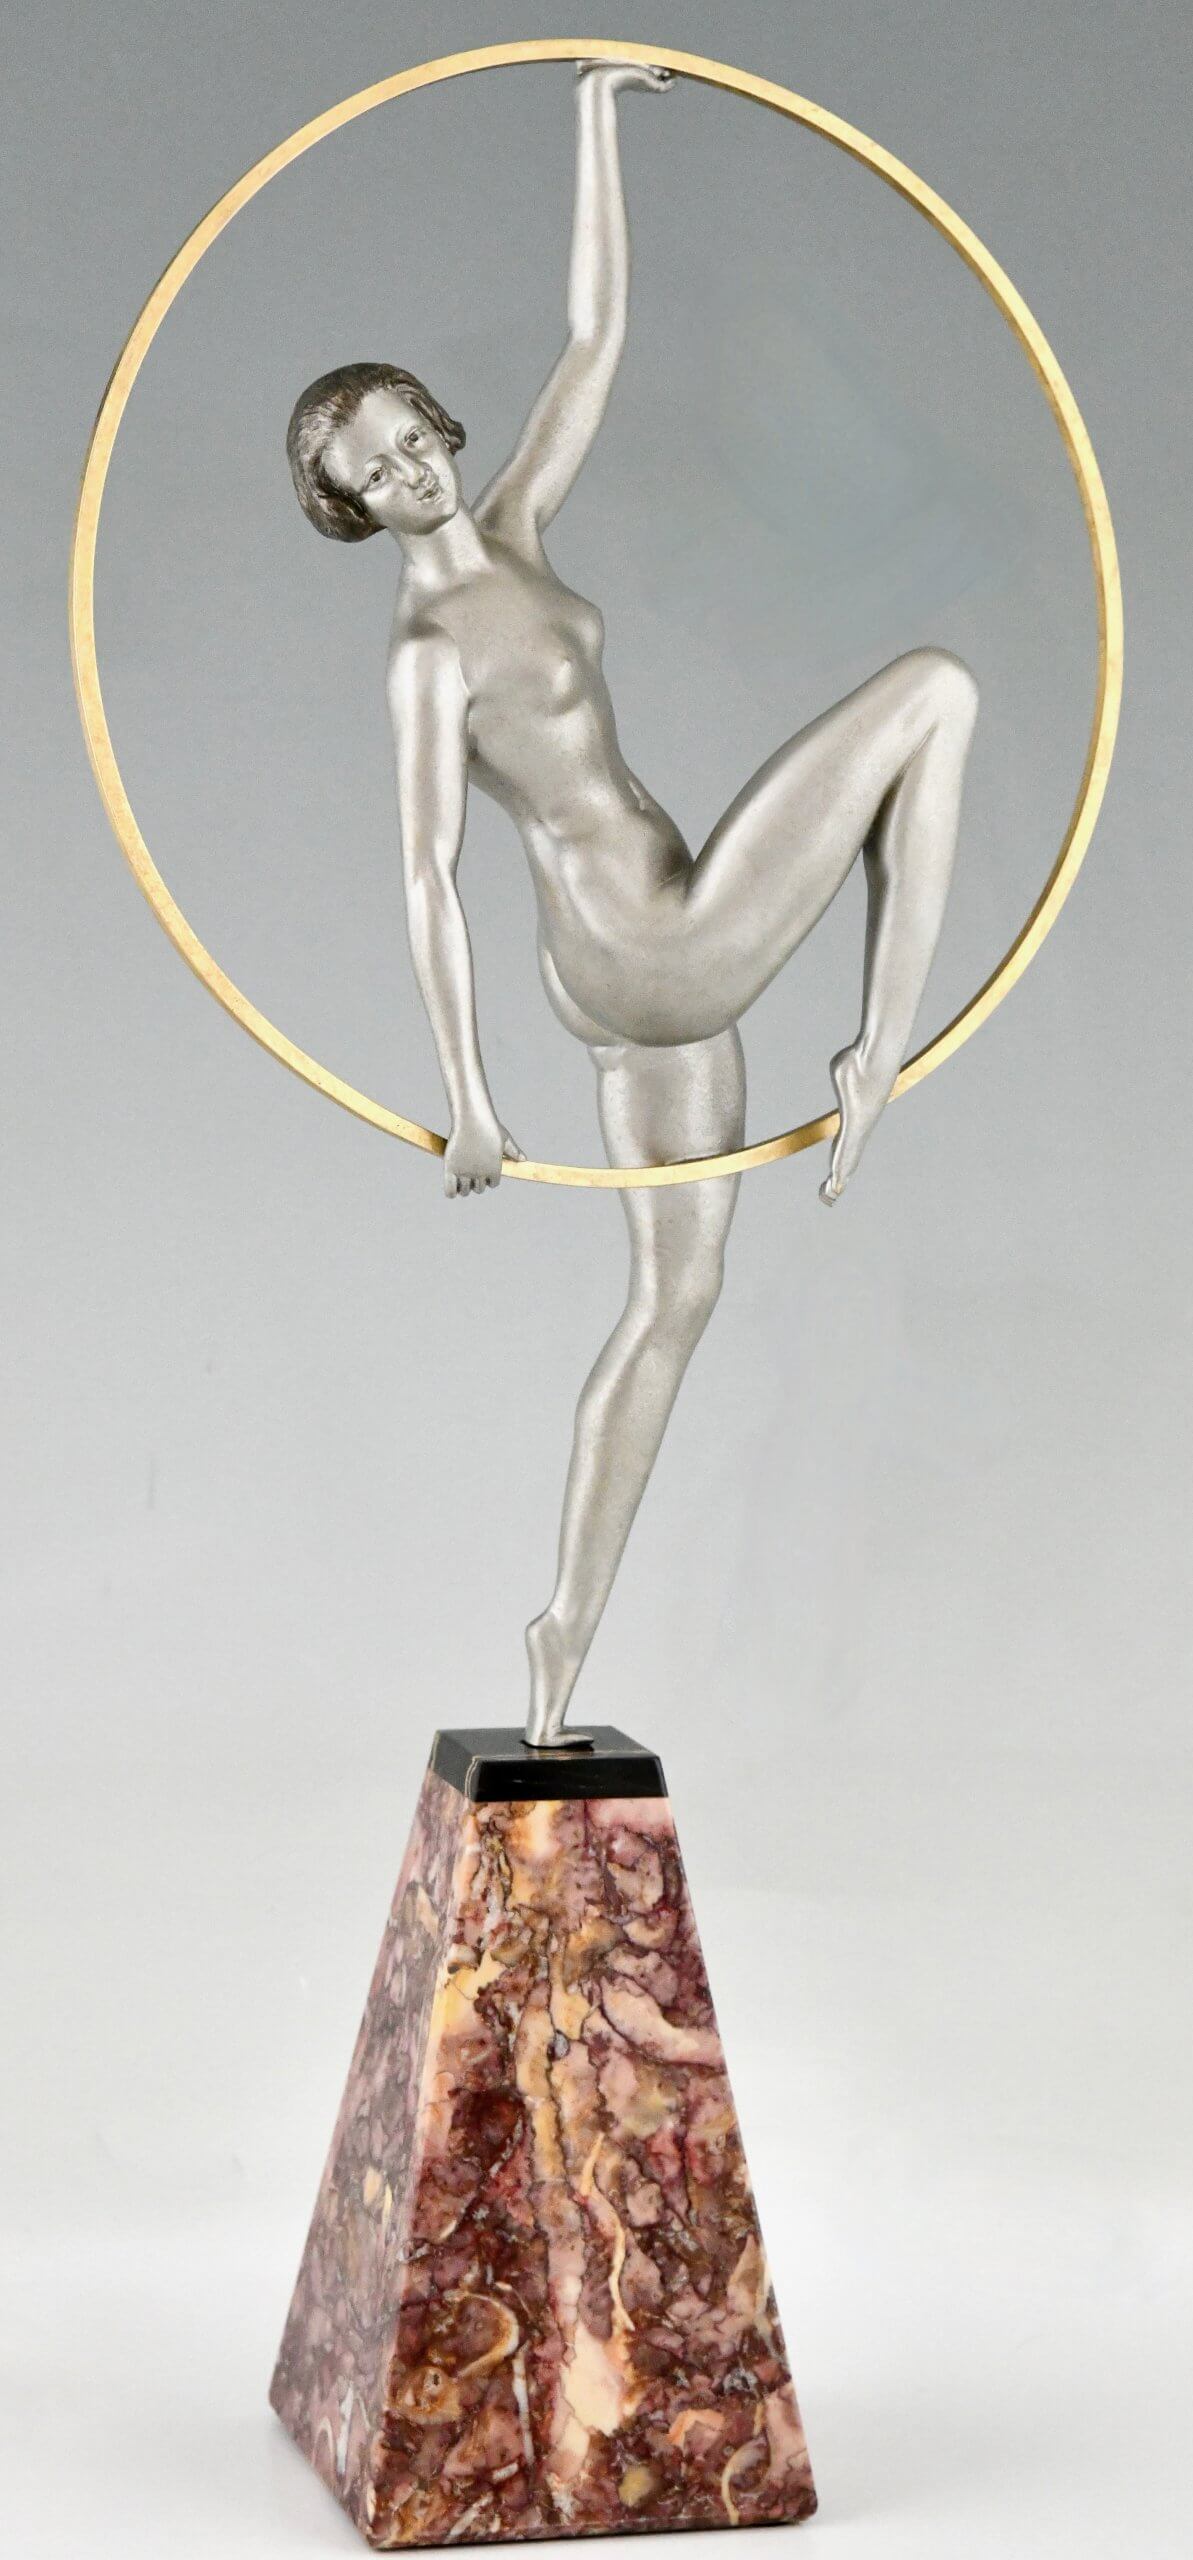 Art Deco sculpture hoop dancer.